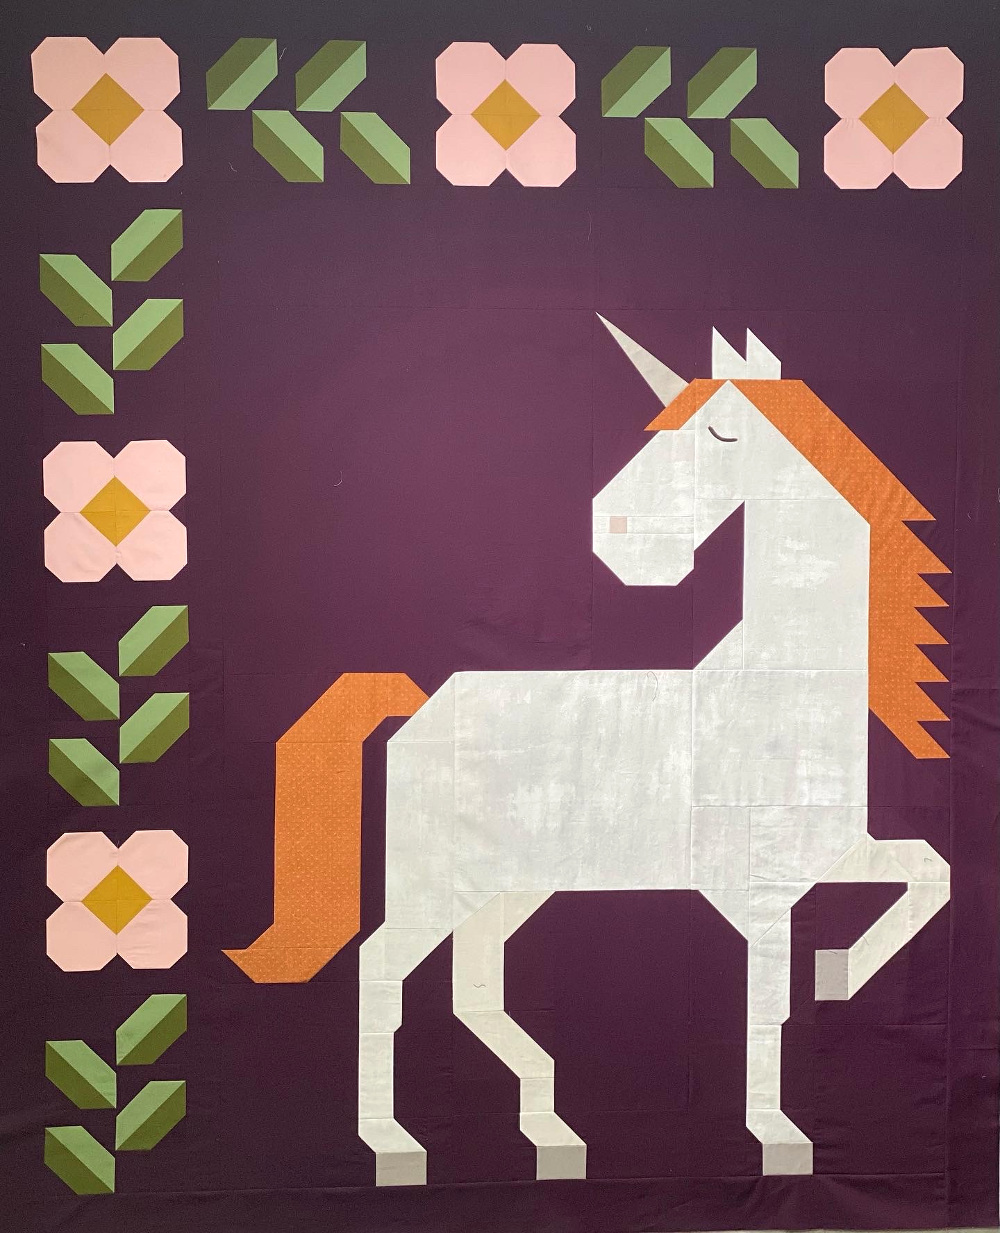 Unicorn Garden quilt top by Sabra H.